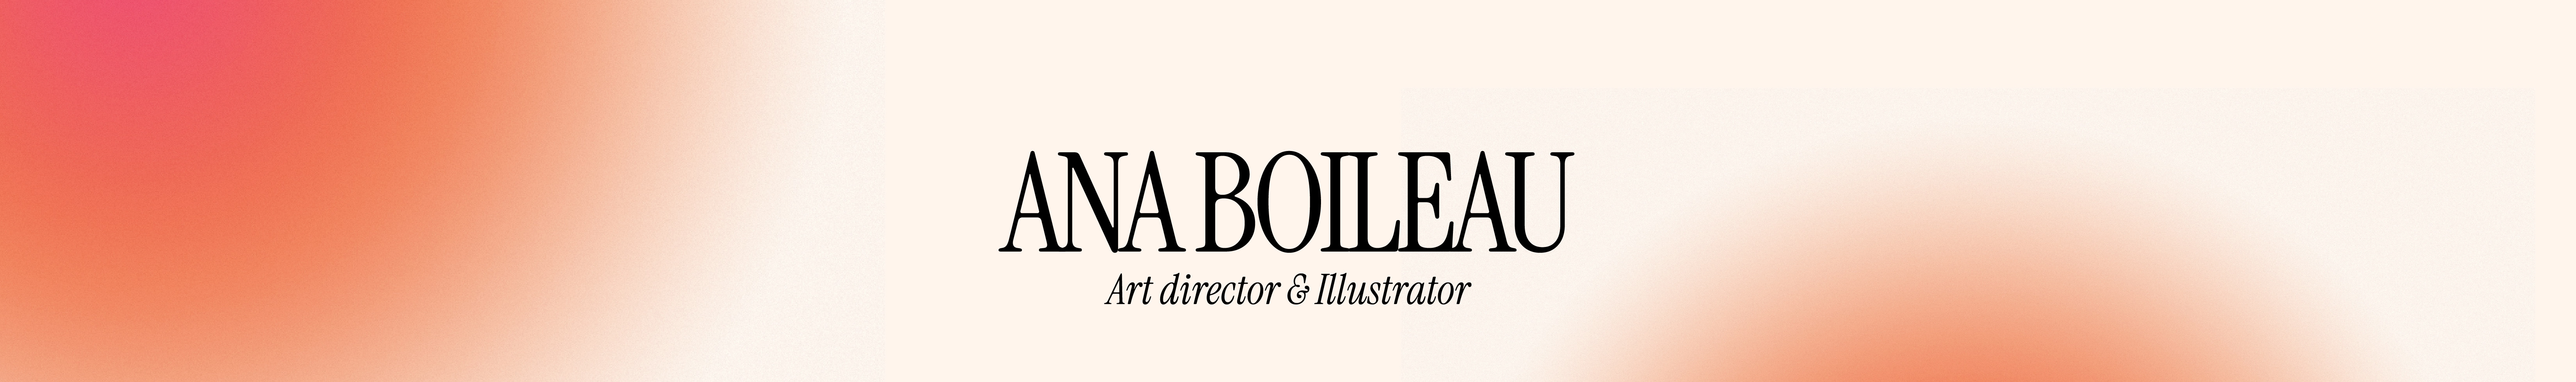 Ana Boileau's profile banner